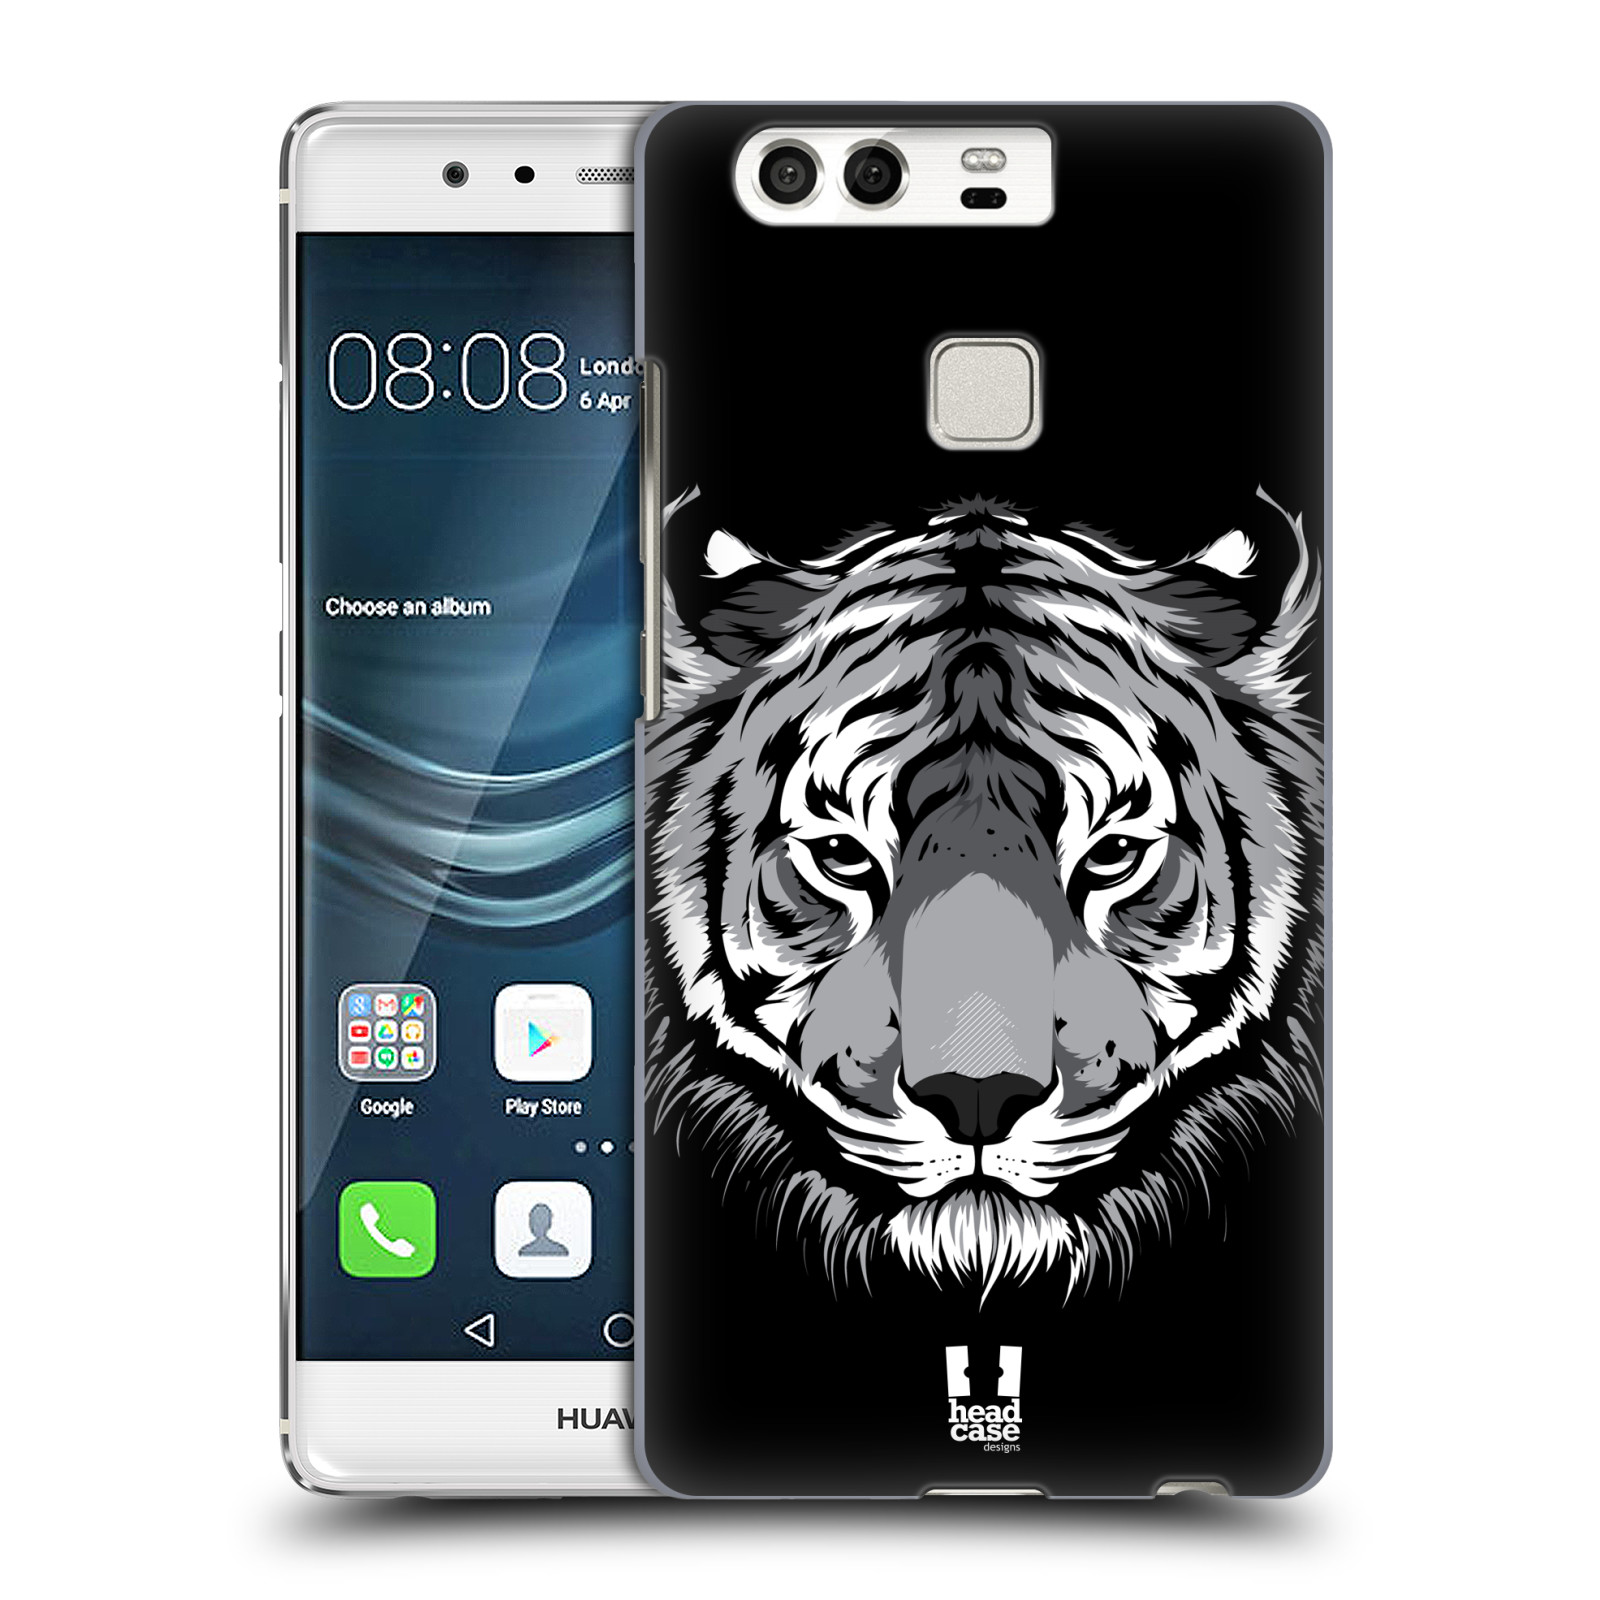 HEAD CASE plastový obal na mobil Huawei P9 / P9 DUAL SIM vzor Zvíře kreslená tvář 2 tygr